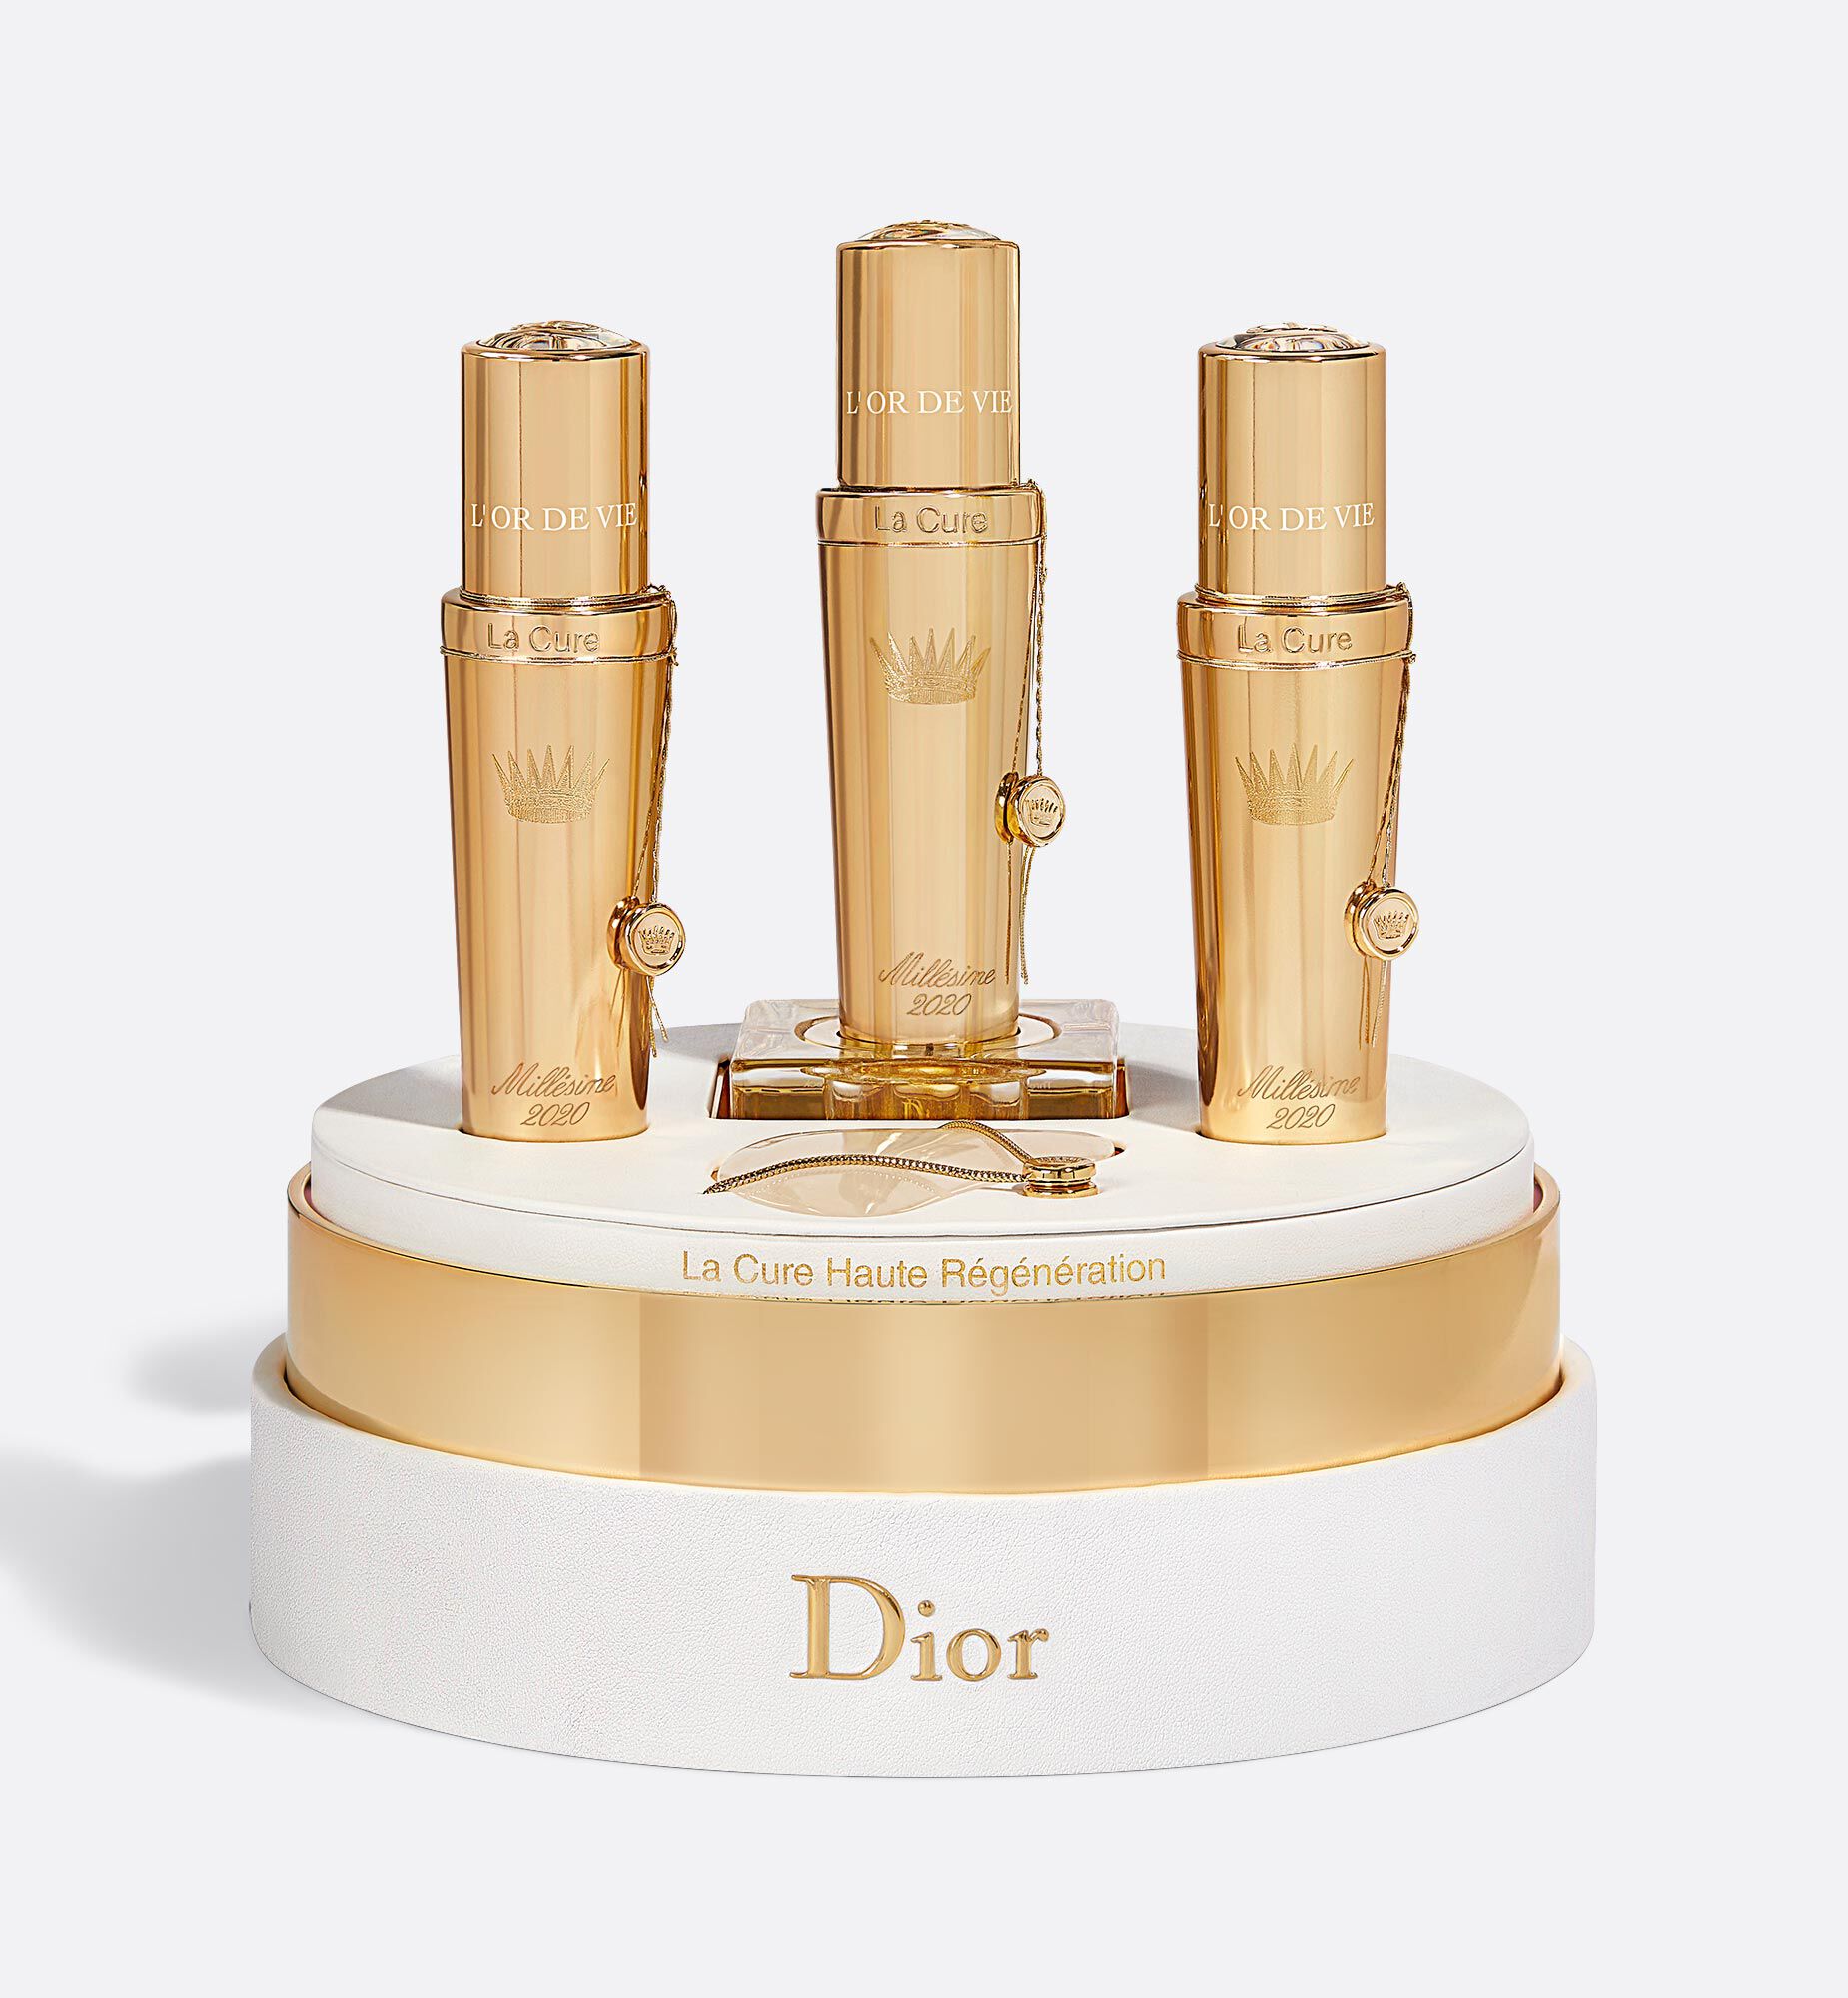 Dior オードヴィラキュール 2017 美容液 新品-